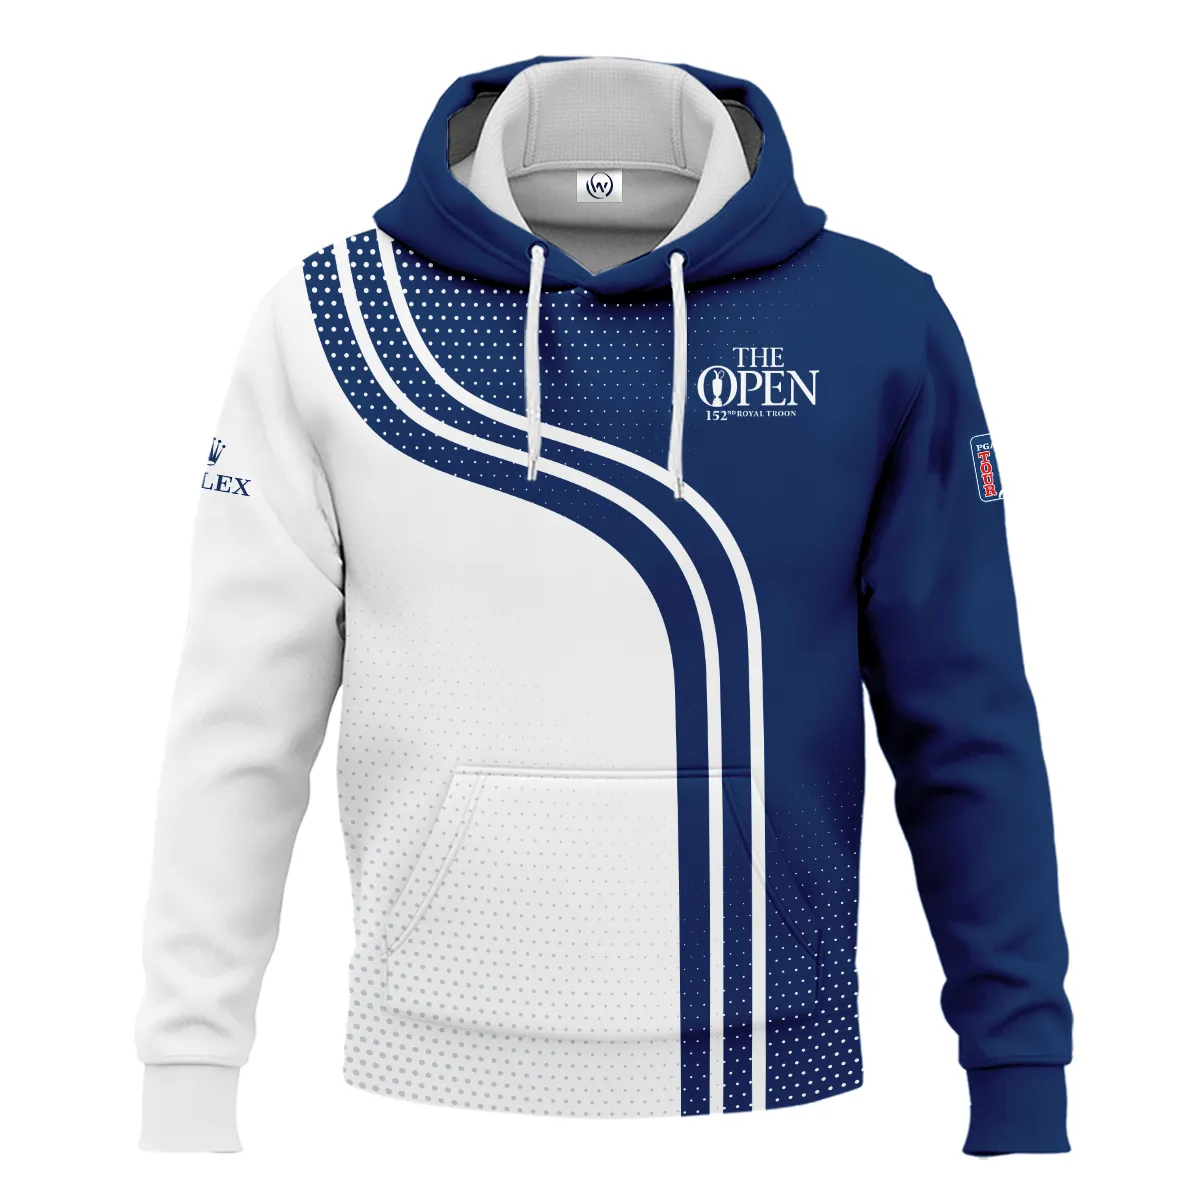 Golf Blue Mix White Sport 152nd Open Championship Pinehurst Rolex Sleeveless Jacket All Over Prints QTTOP1806A1ROXSJK